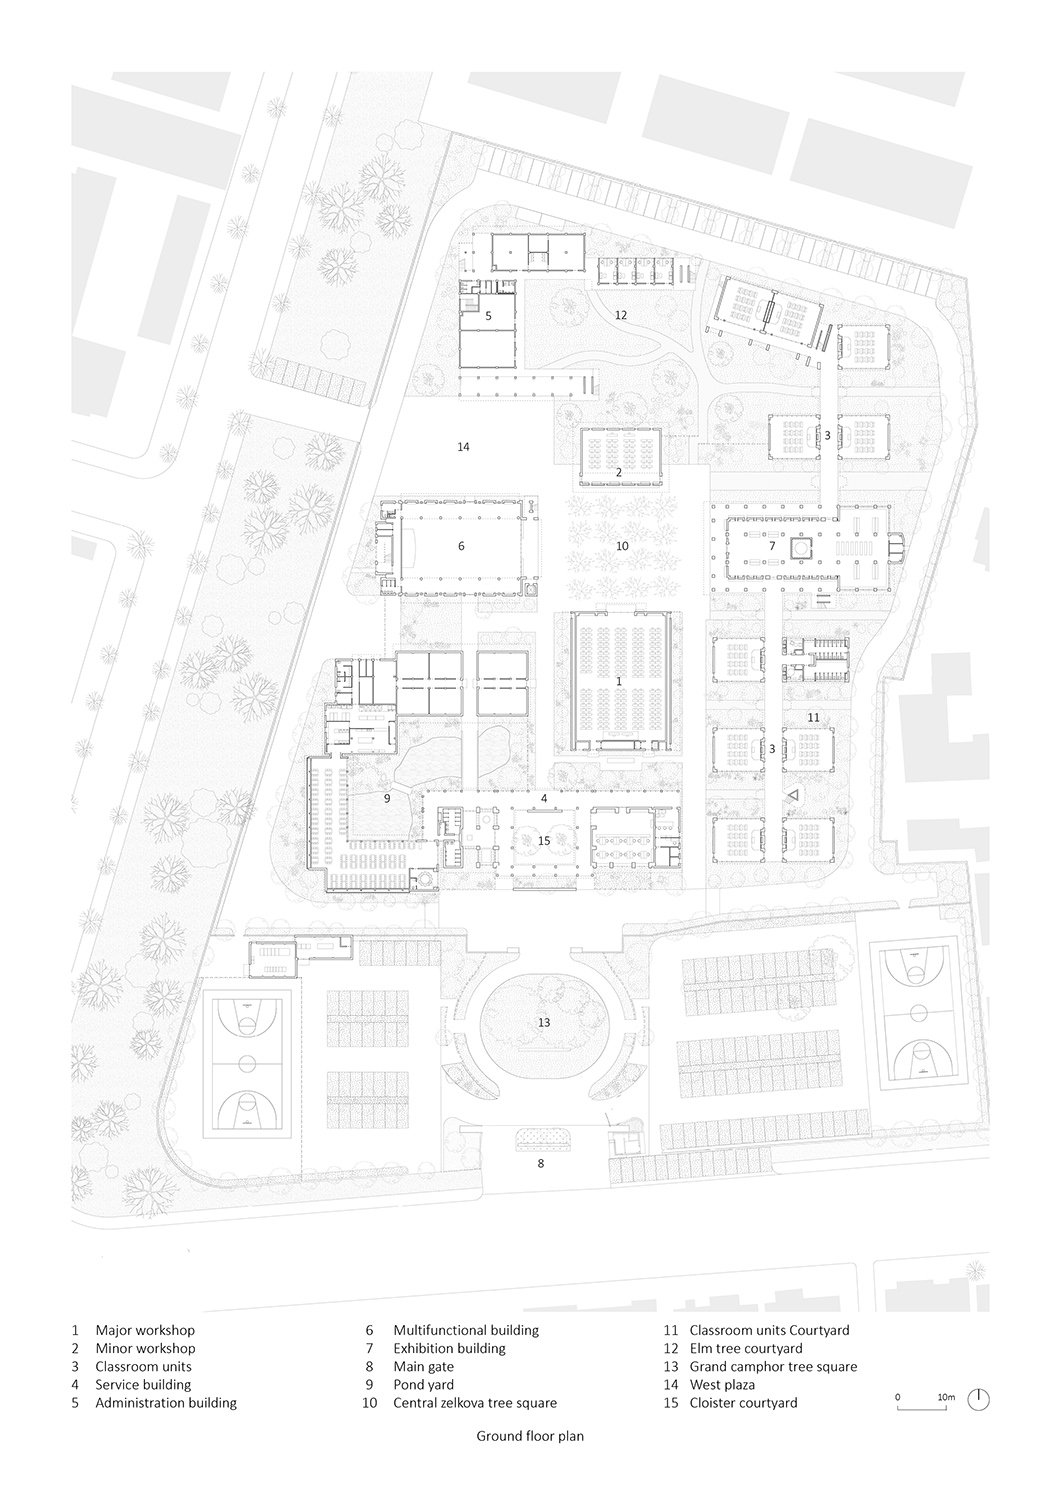 Ground floor plan | genarchitects